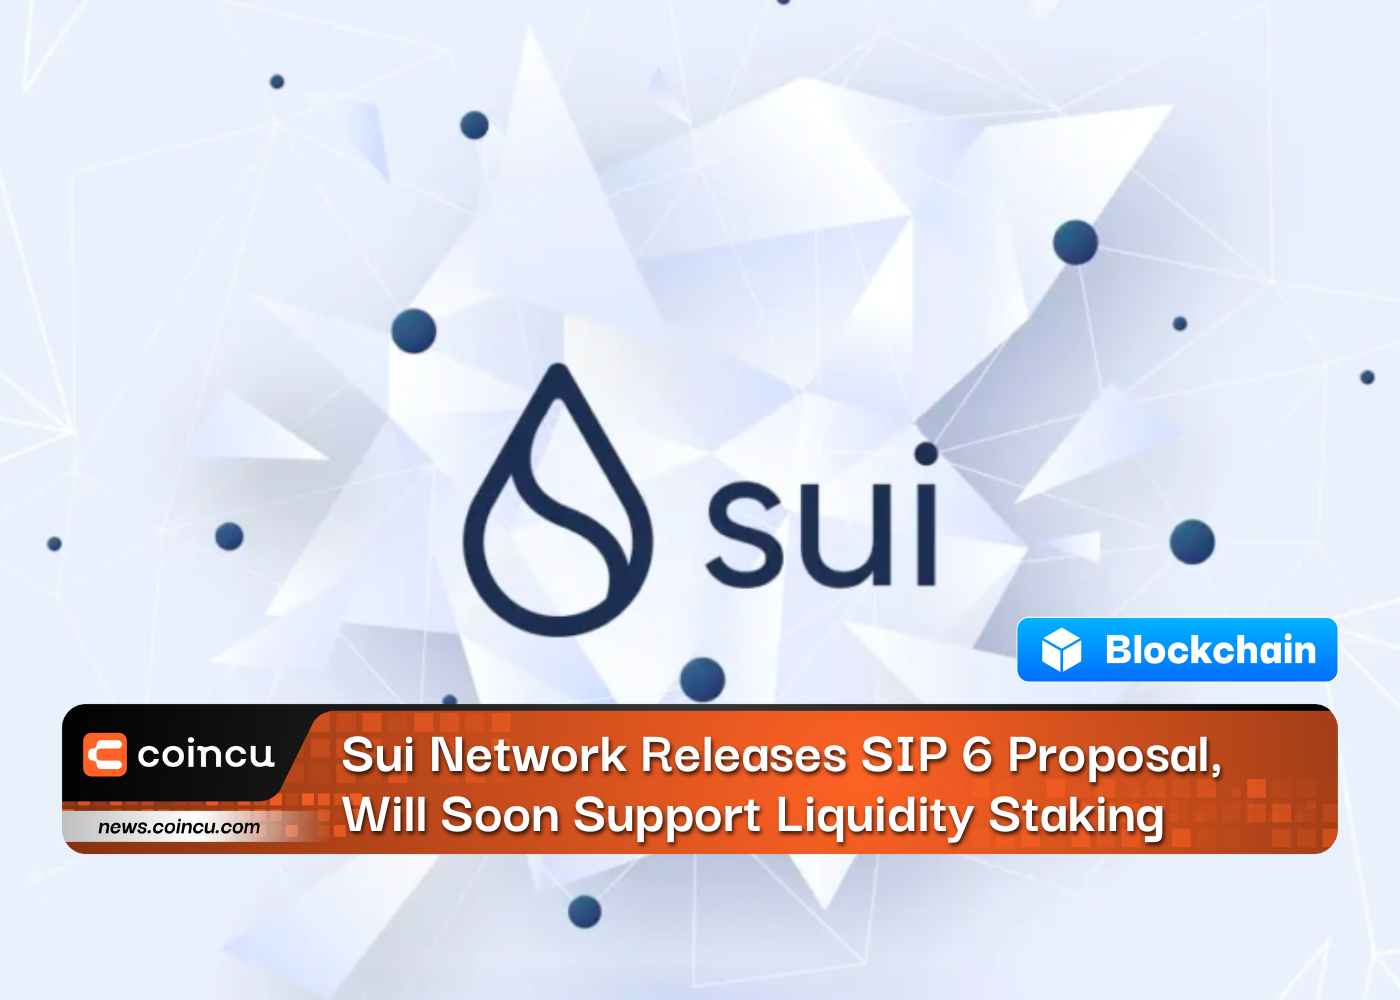 Sui Network lança proposta SIP 6 e em breve apoiará liquidez